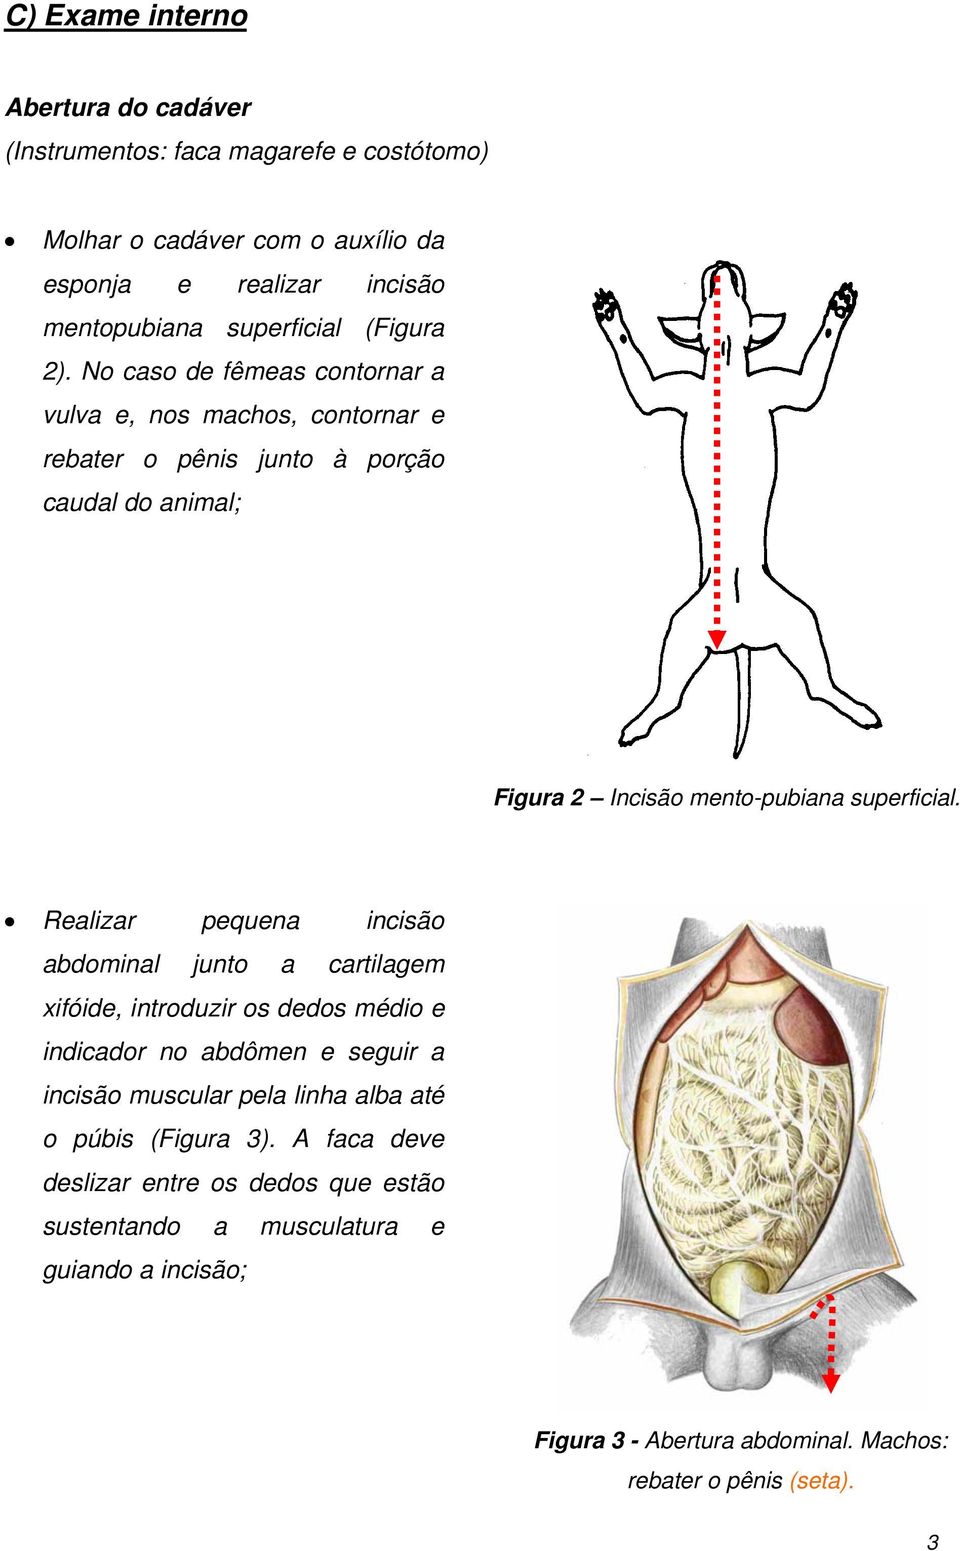 Realizar pequena incisão abdominal junto a cartilagem xifóide, introduzir os dedos médio e indicador no abdômen e seguir a incisão muscular pela linha alba até o púbis